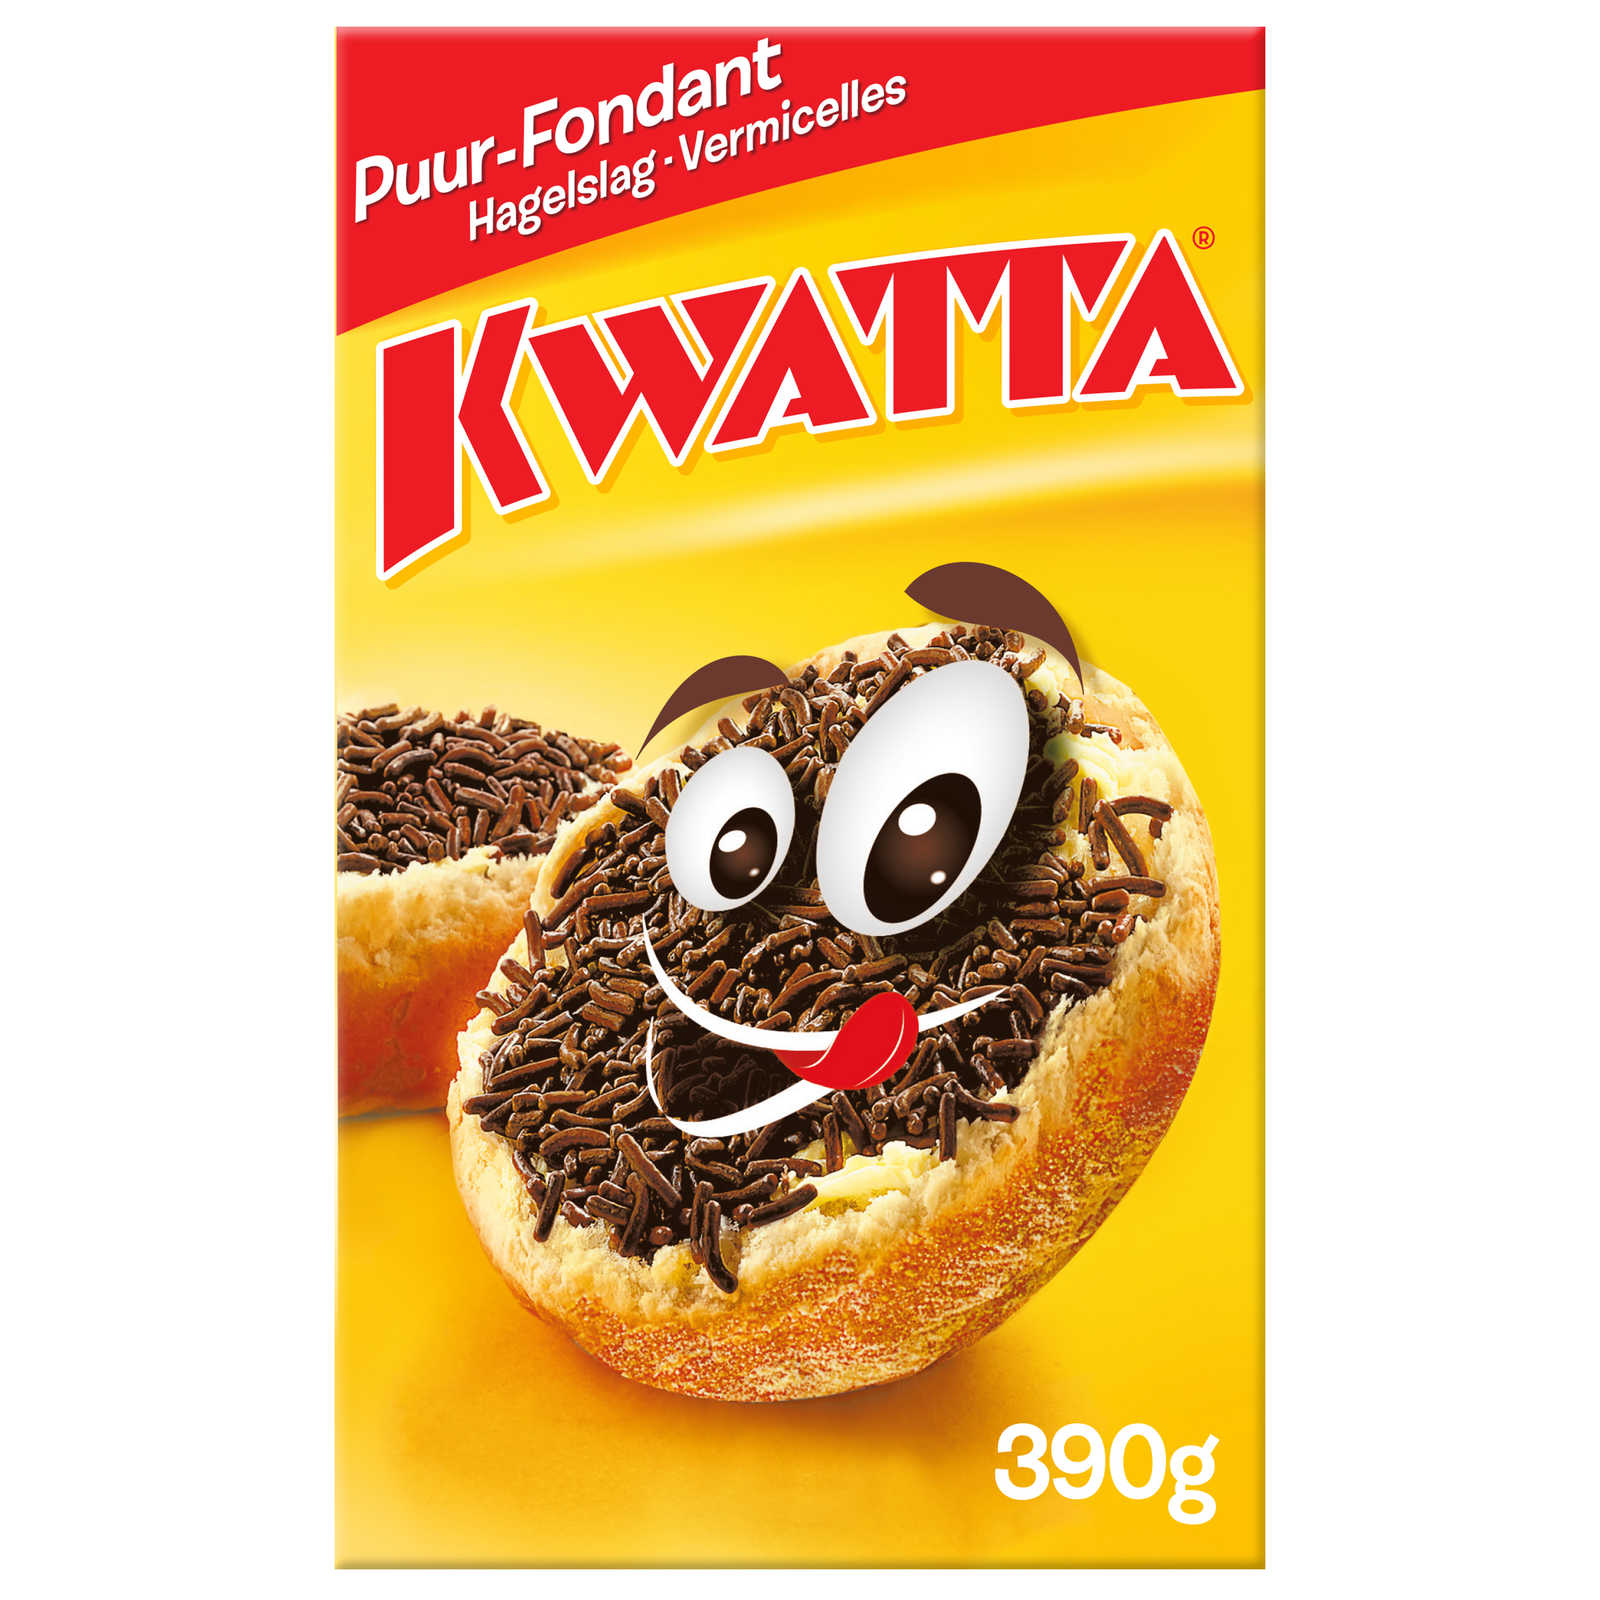 Kwatta